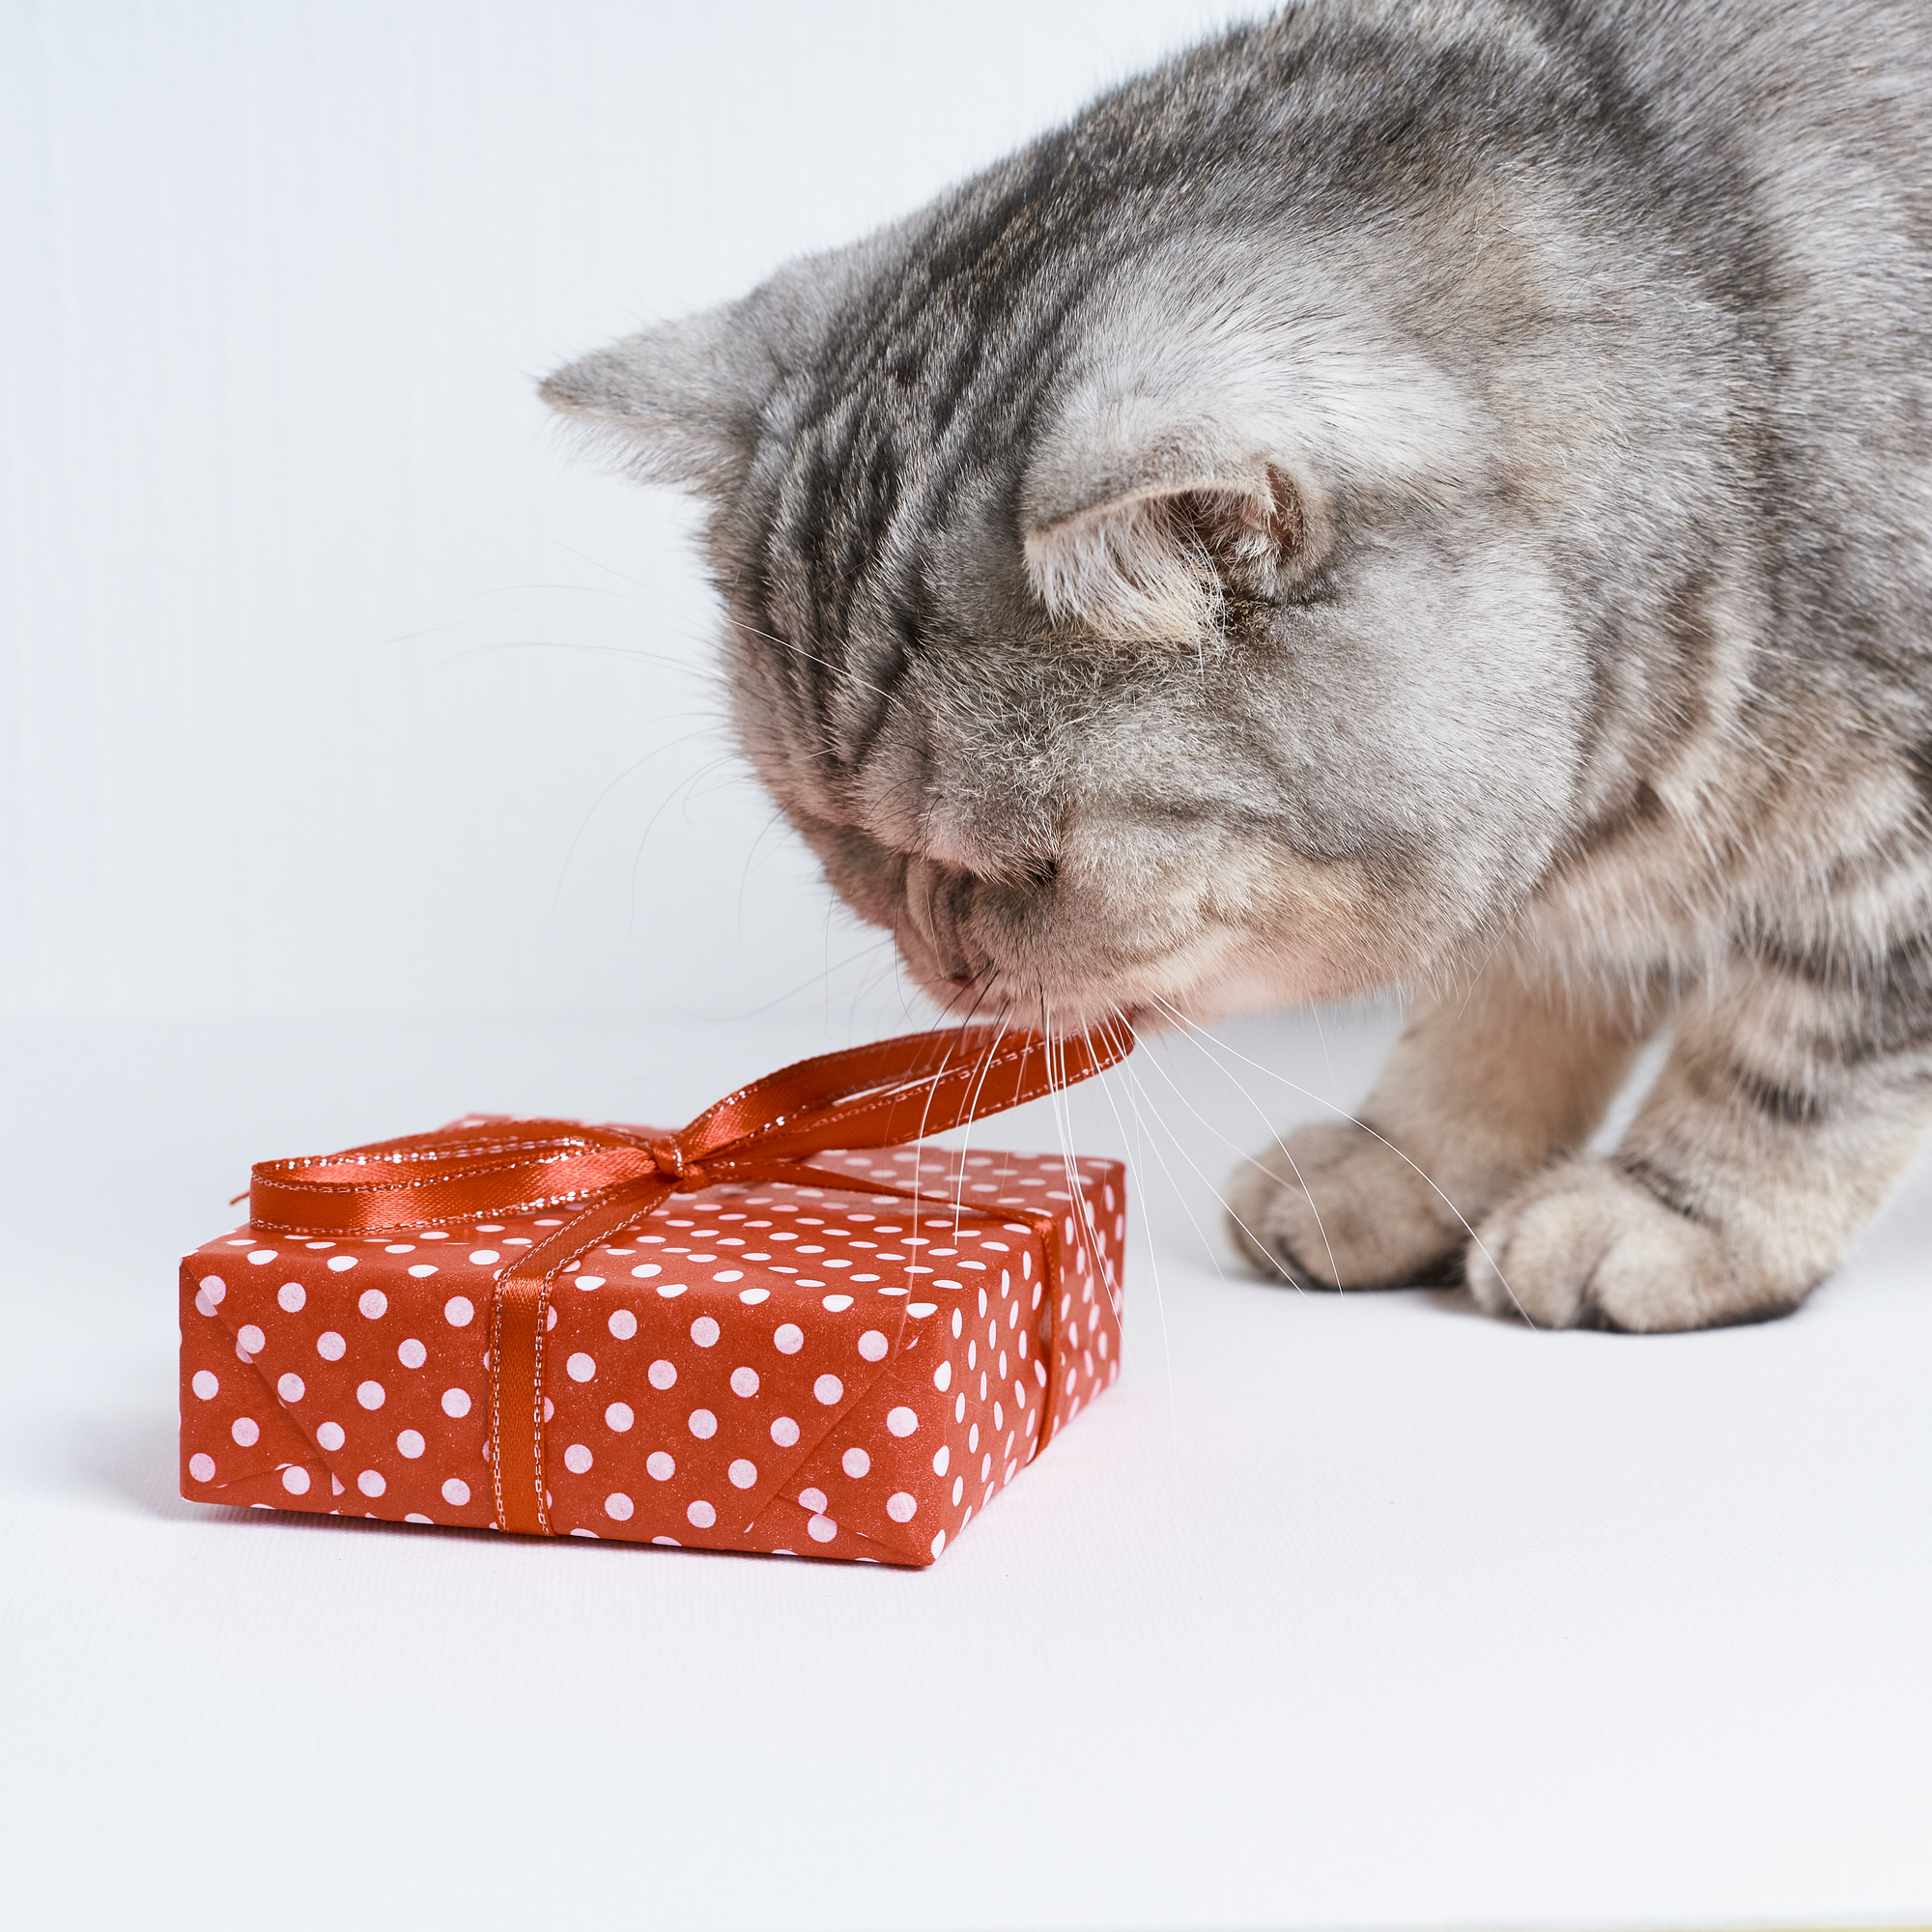 Приманки для кошки для отлова - Как приманить кошку которая не подходит?